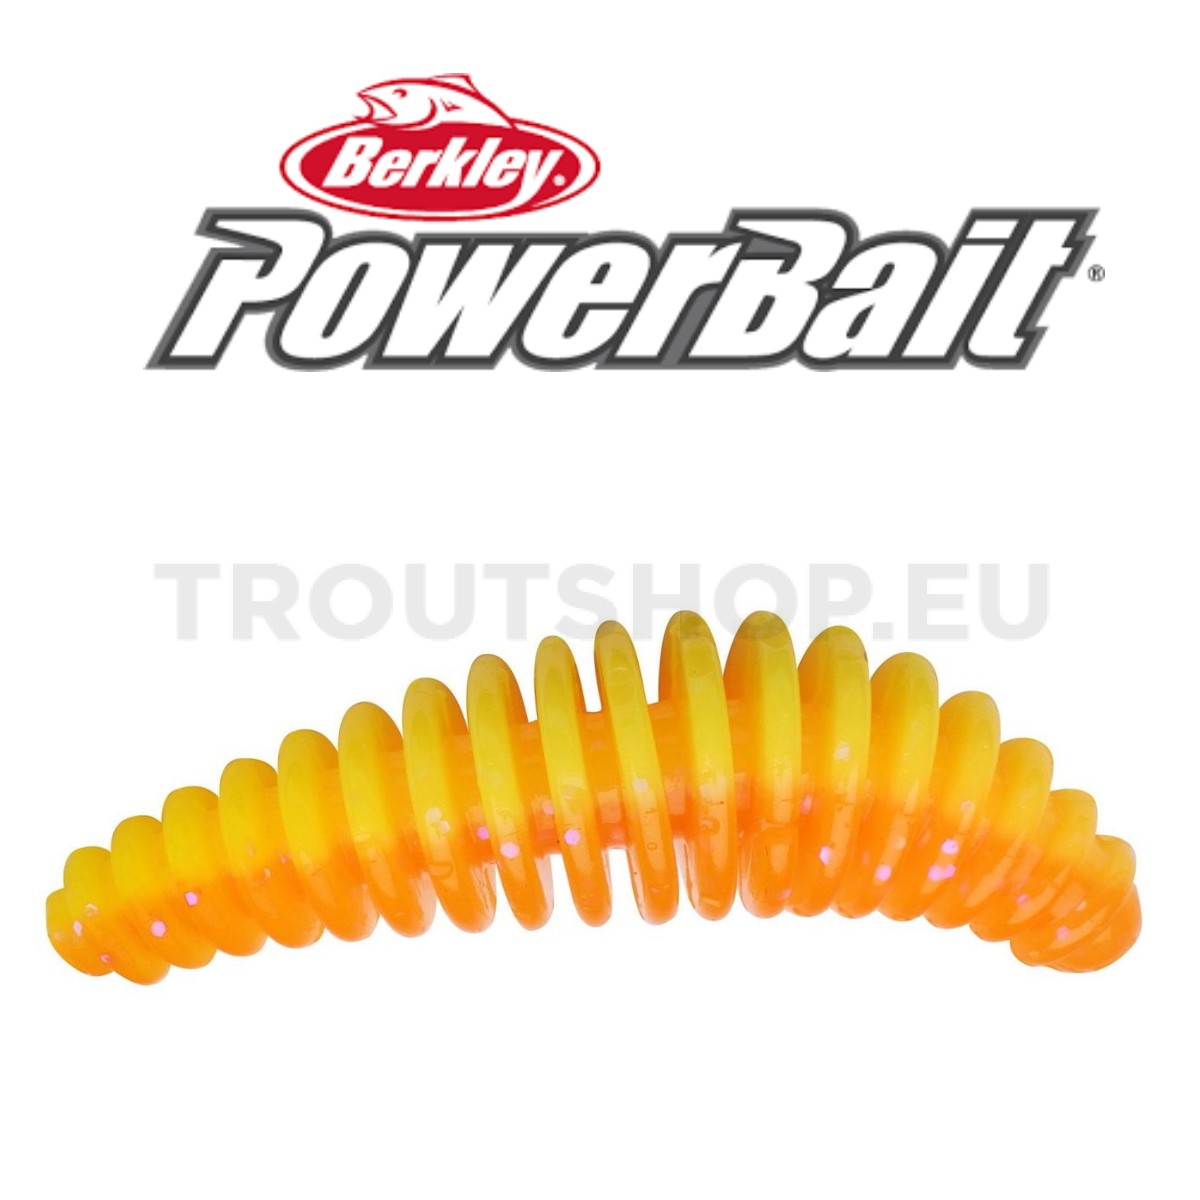 Berkley Powerbait Pupa – Garlic – 45mm – Orange / Yellow - TroutShop